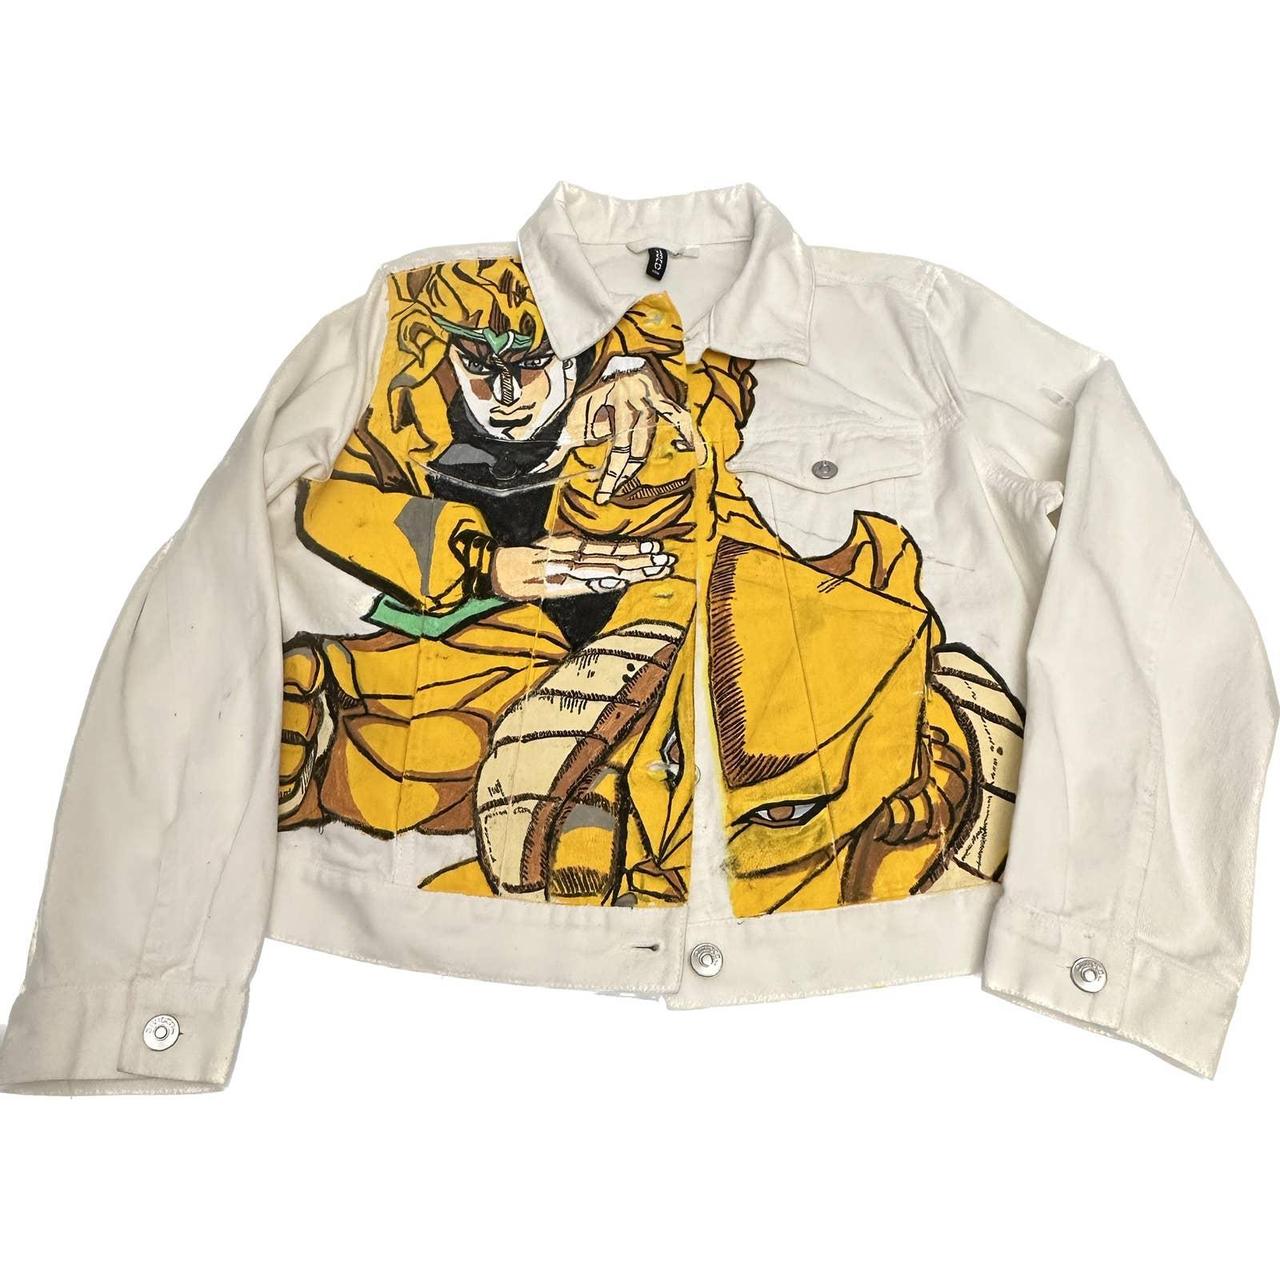 RARE Doublet polaroid coach jacket Large size 35L x... - Depop